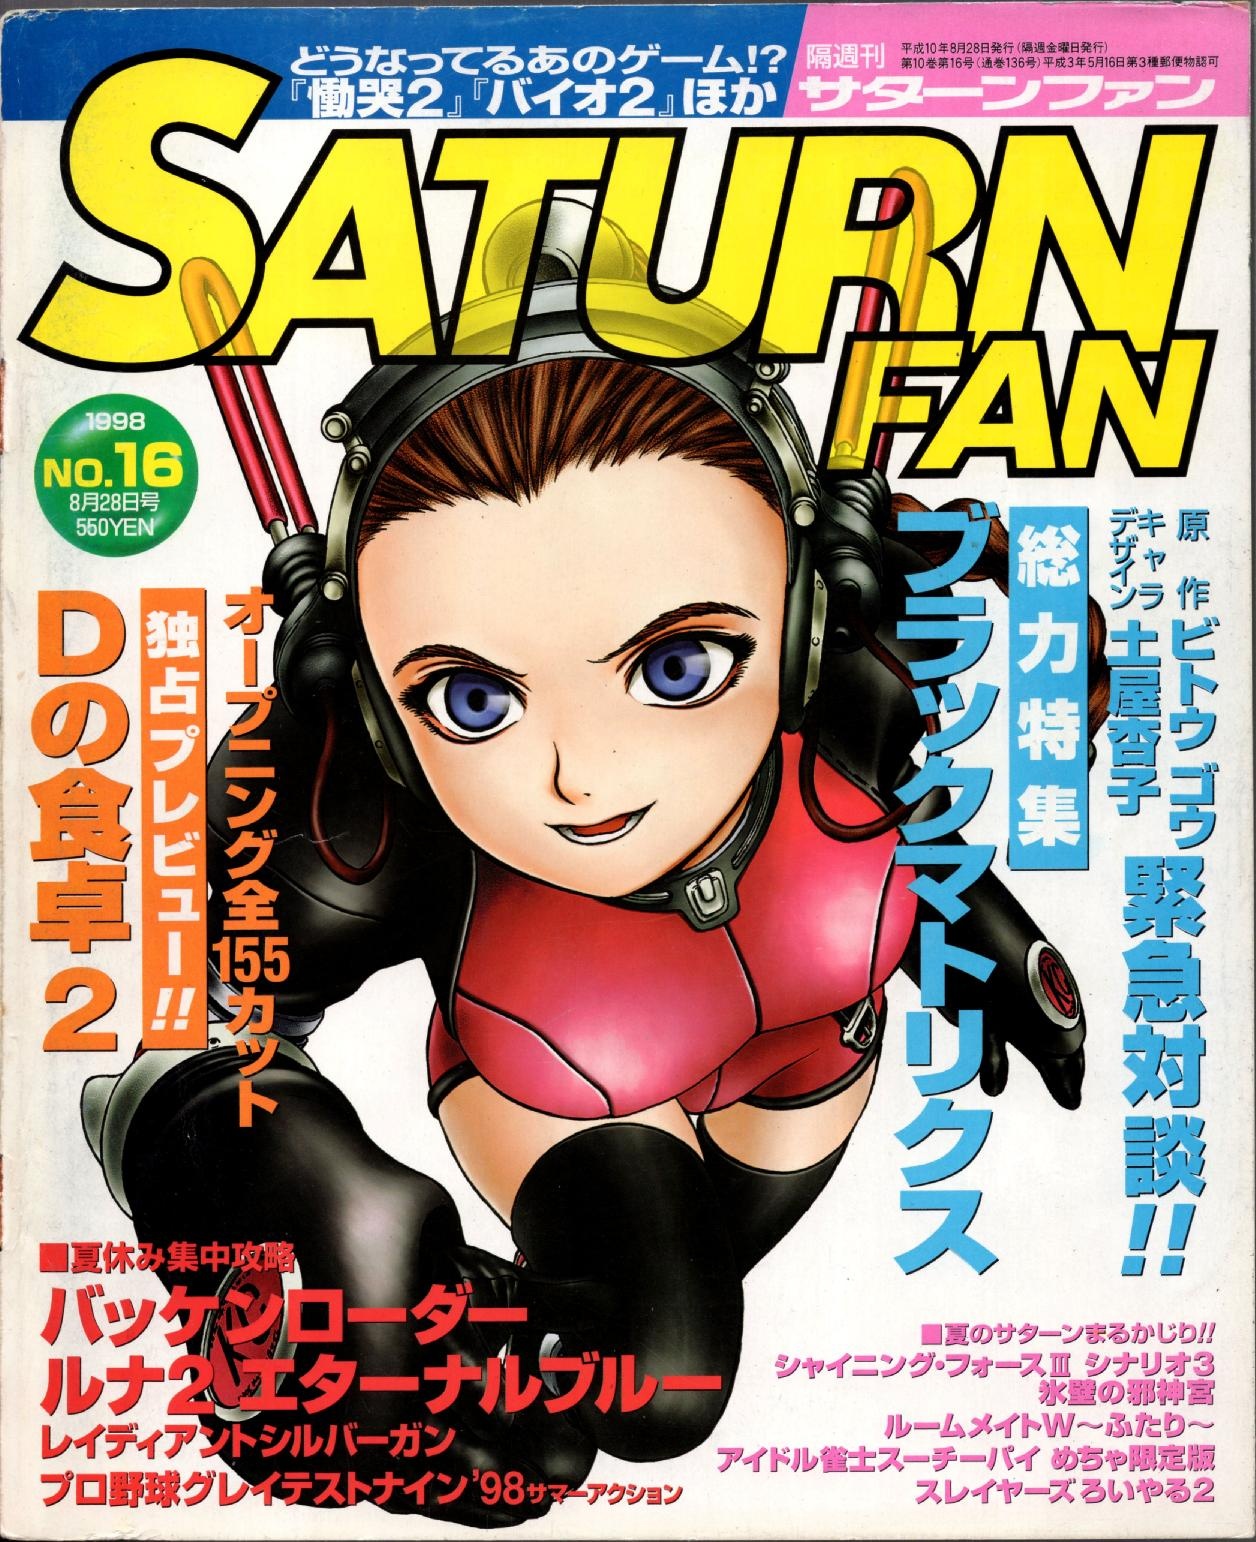 SaturnFan JP 1998-16 19980828.pdf